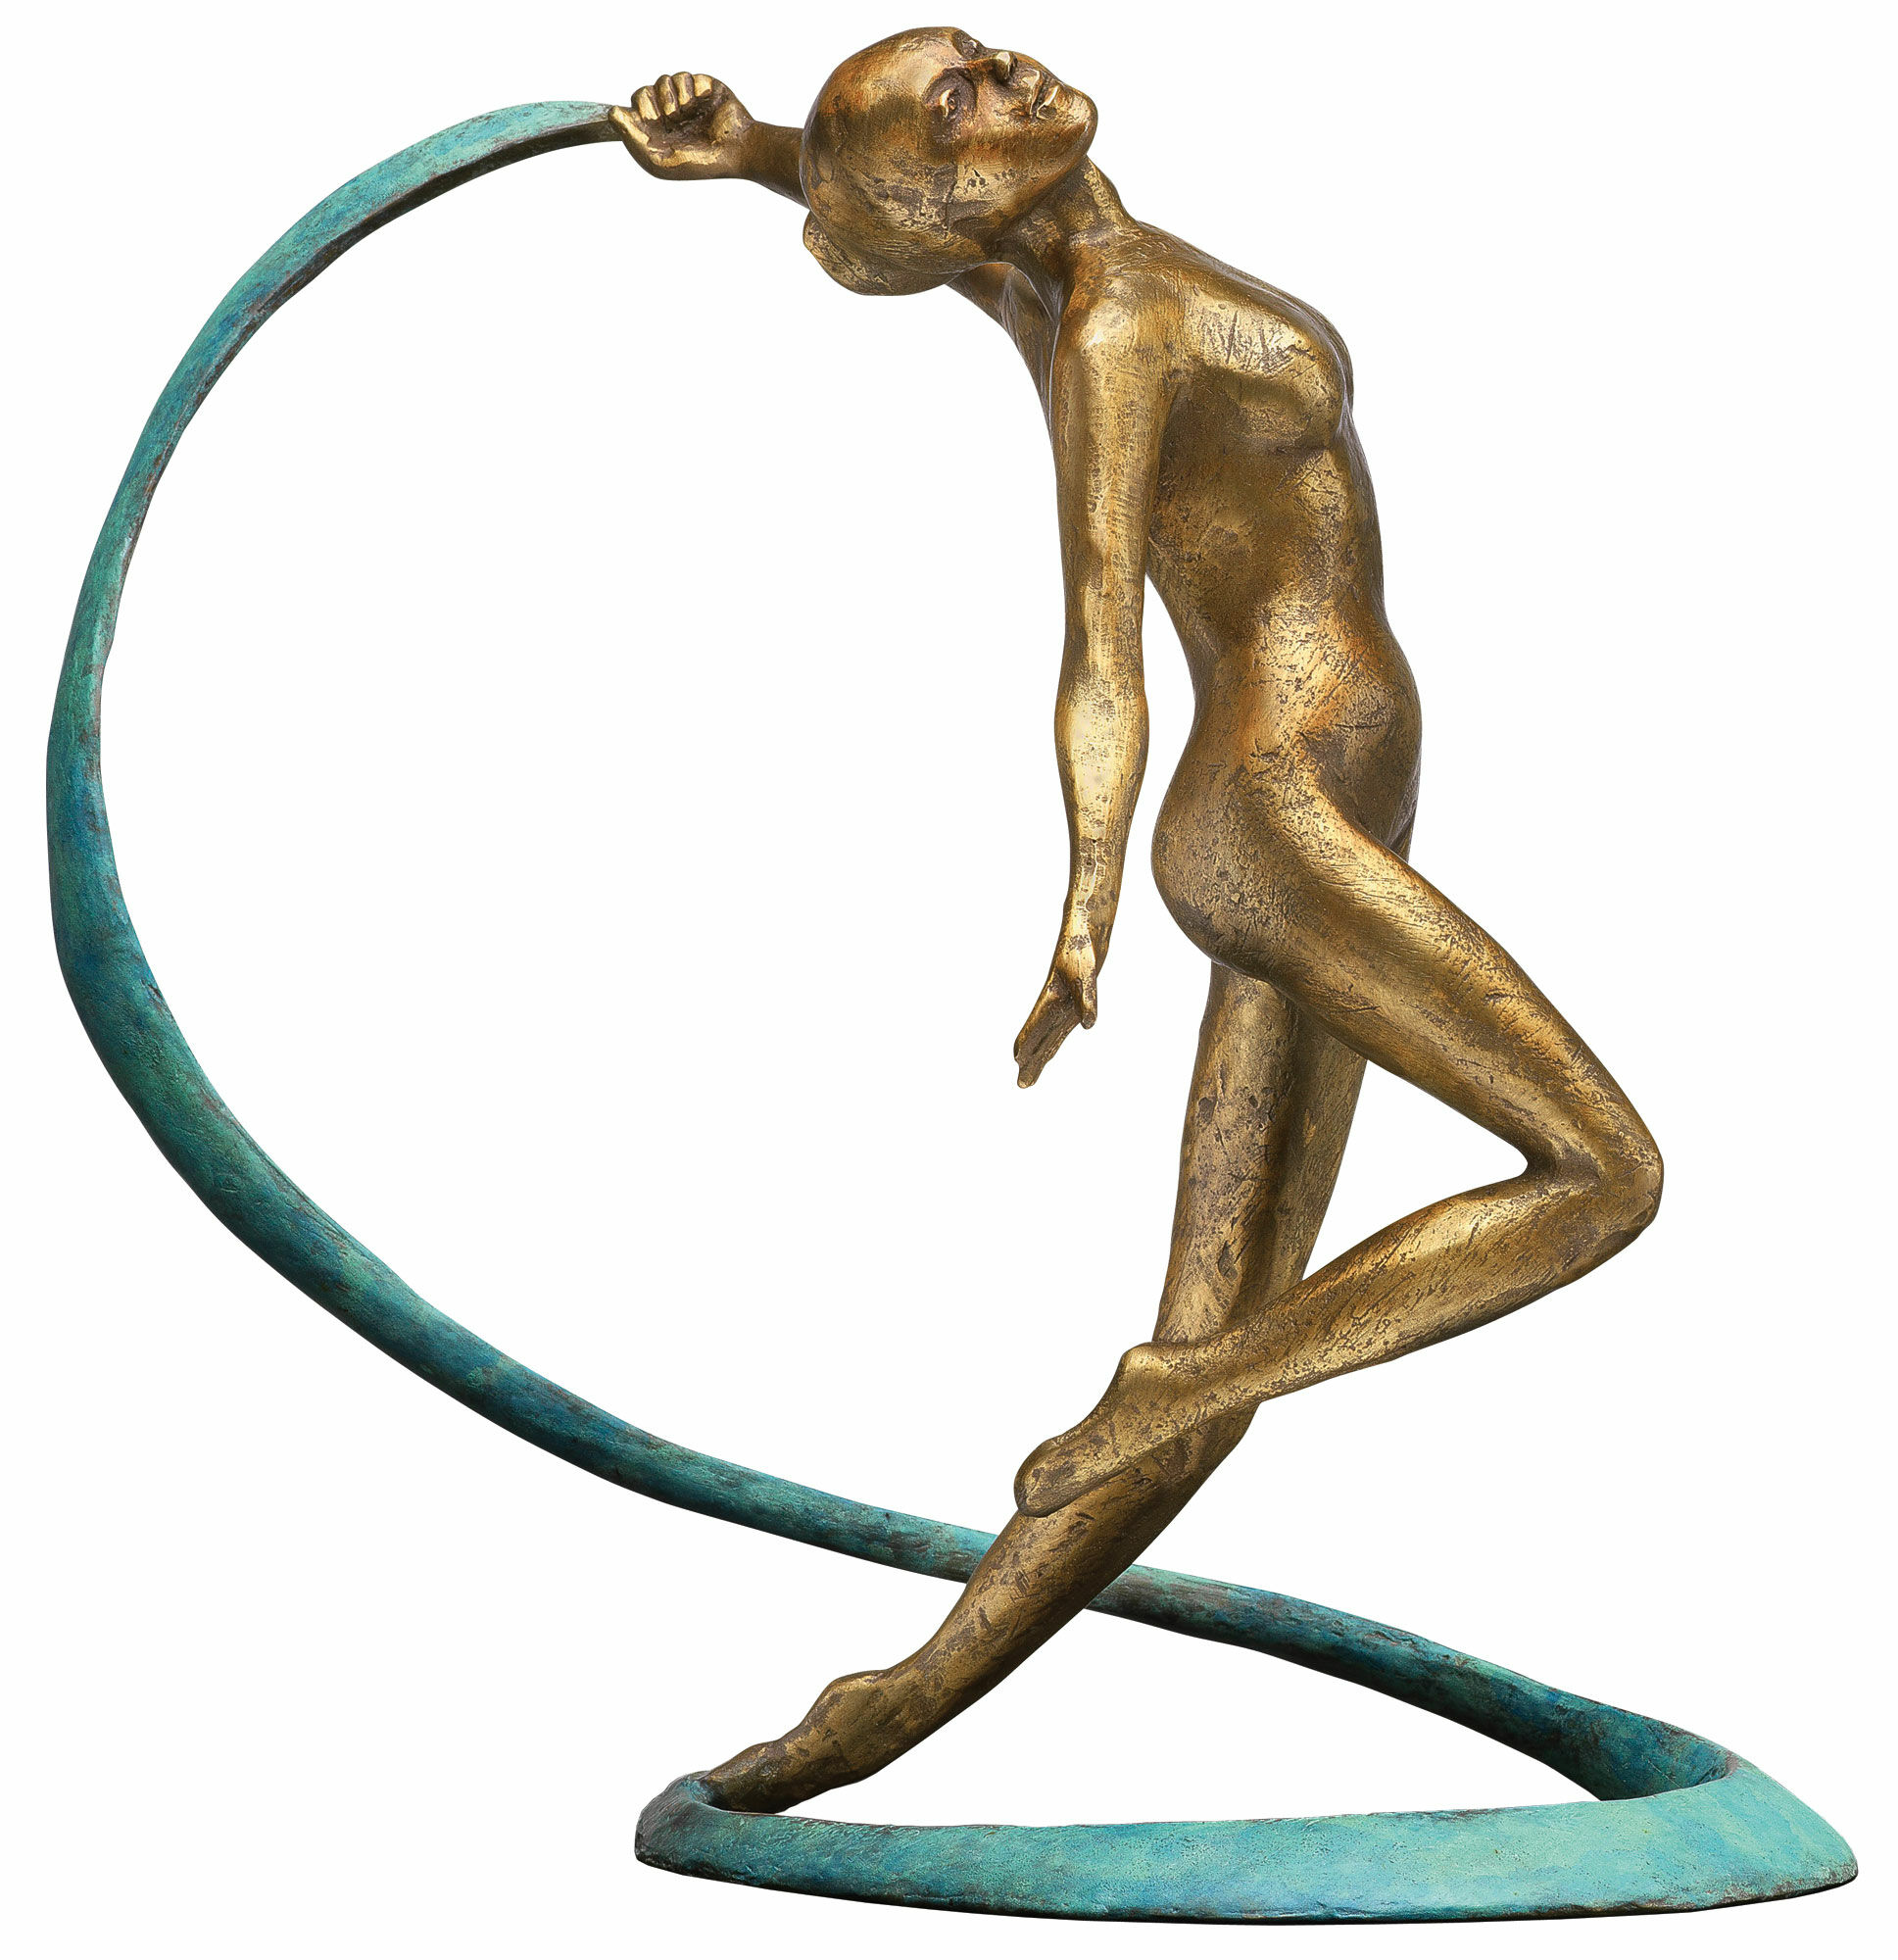 Skulptur "Veil Dancer", bronze von Birgit Stauch